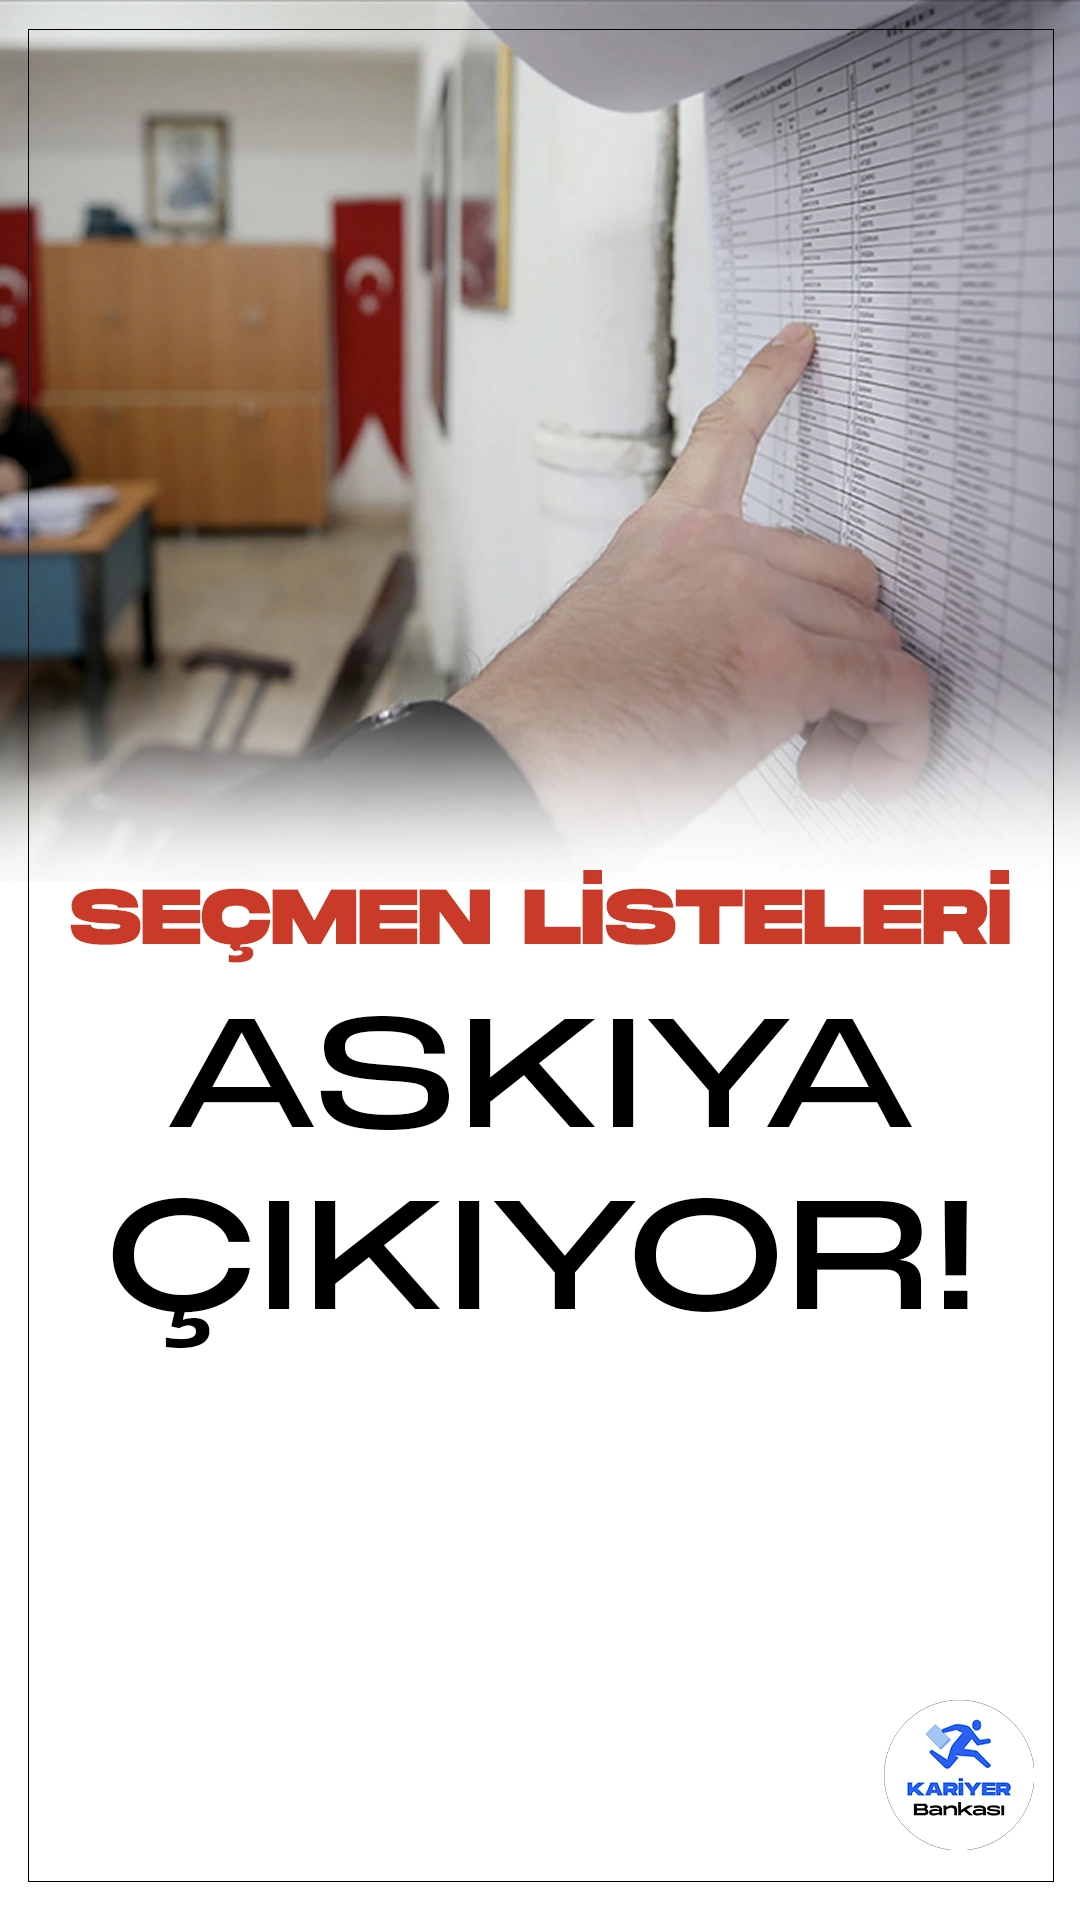 Türkiye'de 31 Mart Yerel Seçim Takvimi İlerliyor: Seçmen Listeleri Bugün Askıya Çıkıyor.31 Mart yerel seçimleri için geri sayım devam ediyor. Bugün, seçmen listeleri muhtarlıklarda askıya çıkarılacak.